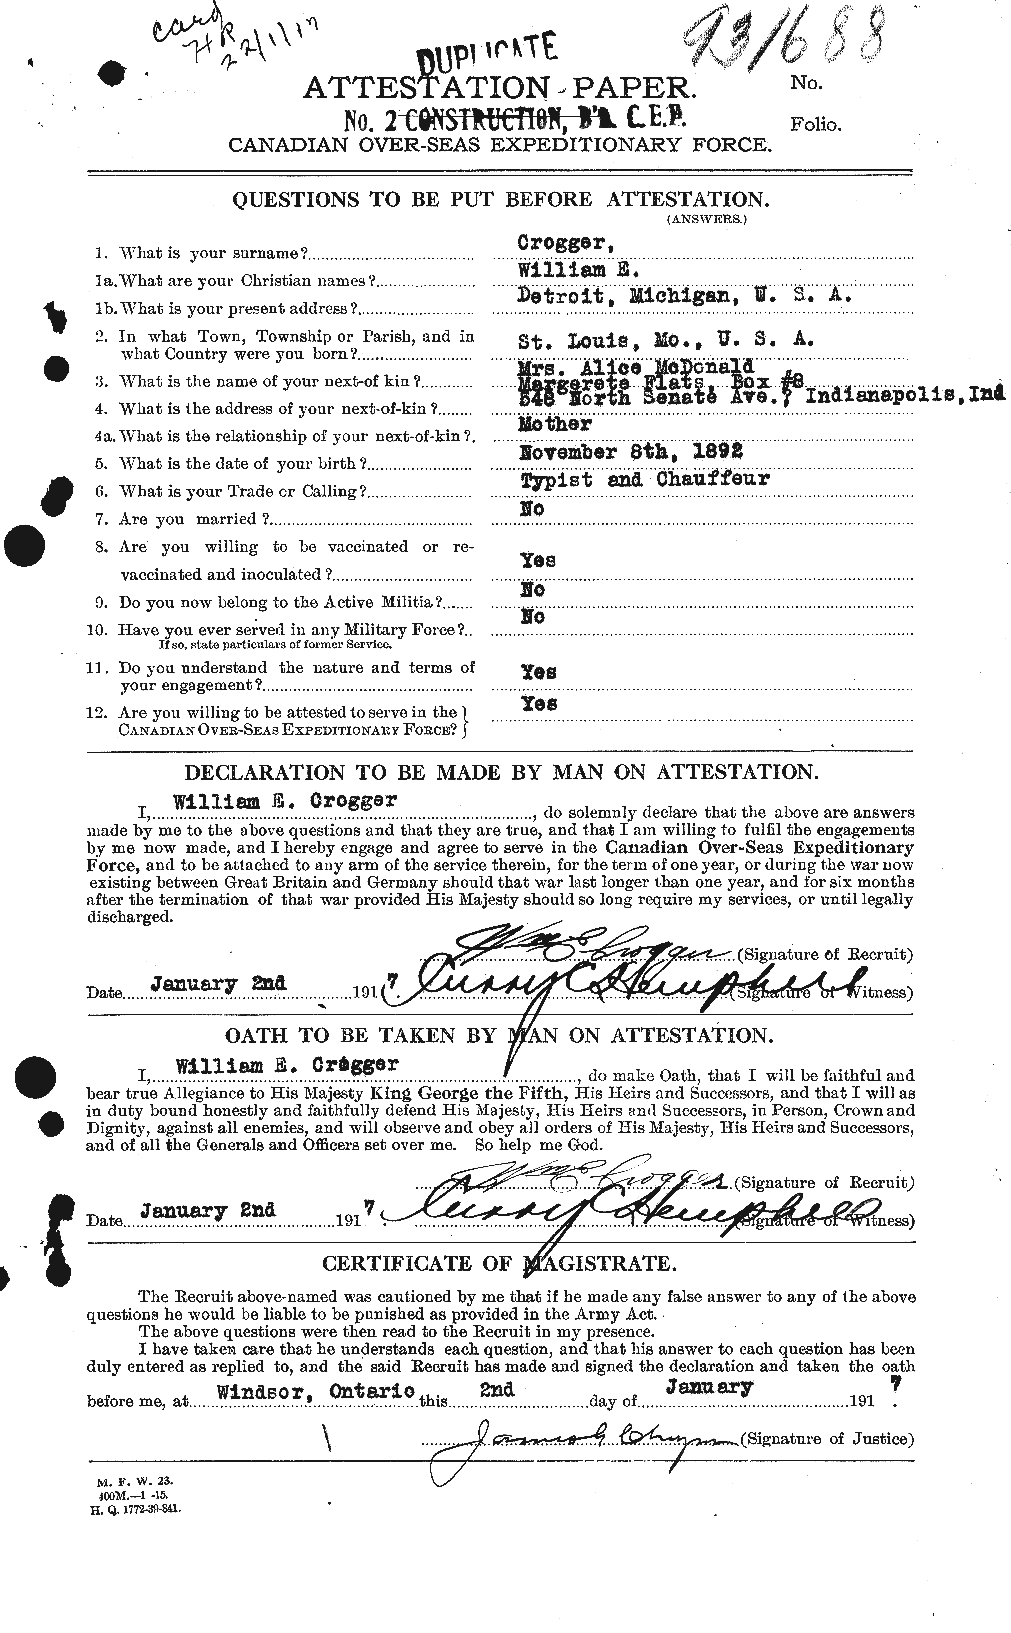 Dossiers du Personnel de la Première Guerre mondiale - CEC 065849a